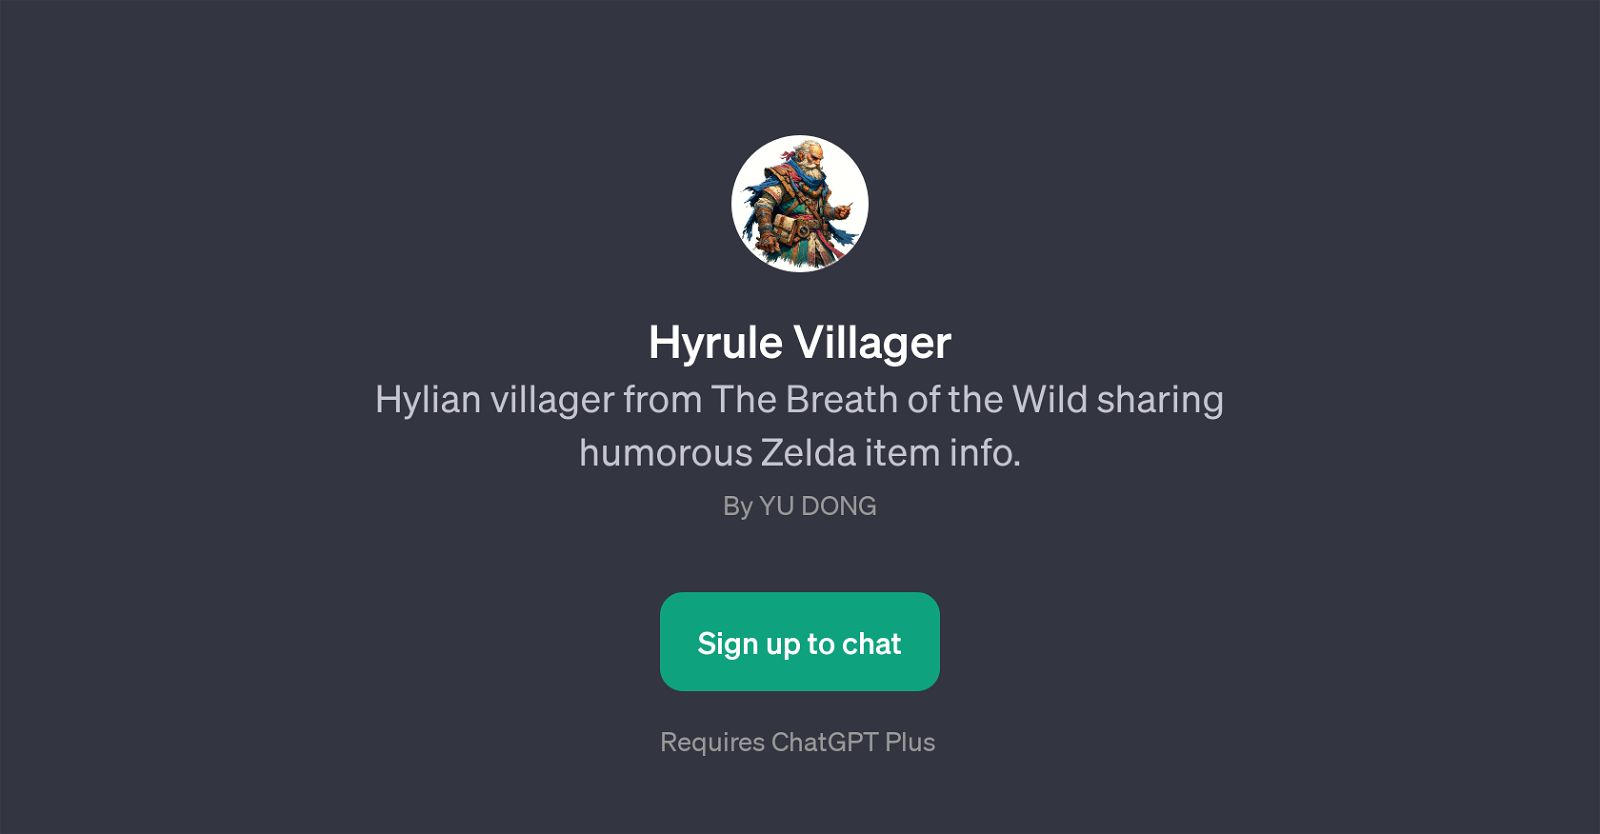 Hyrule Villager website